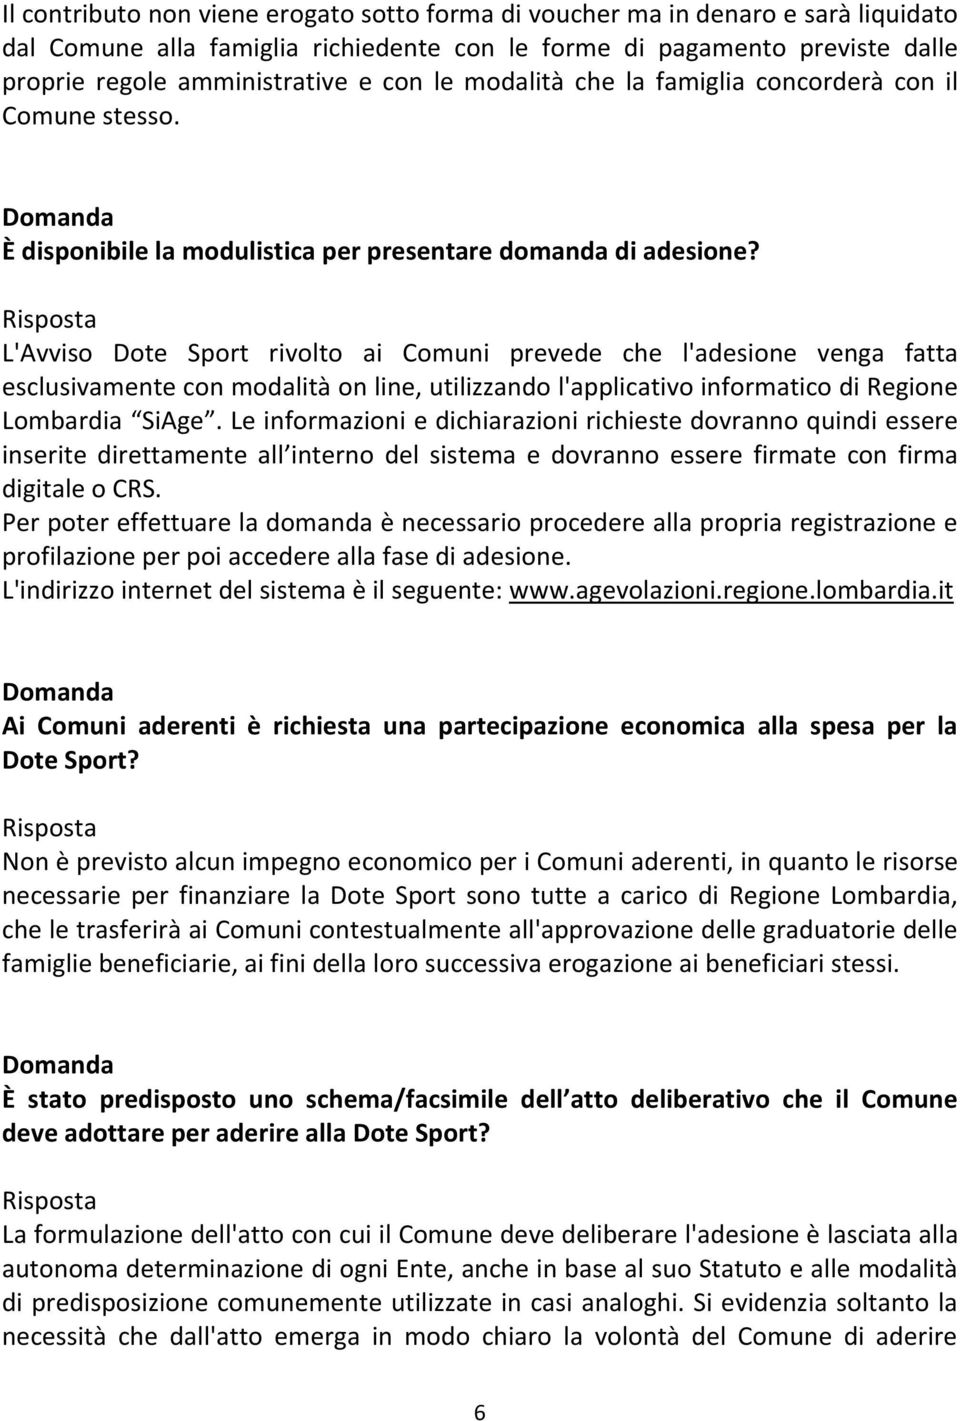 L'Avviso Dote Sport rivolto ai Comuni prevede che l'adesione venga fatta esclusivamente con modalità on line, utilizzando l'applicativo informatico di Regione Lombardia SiAge.